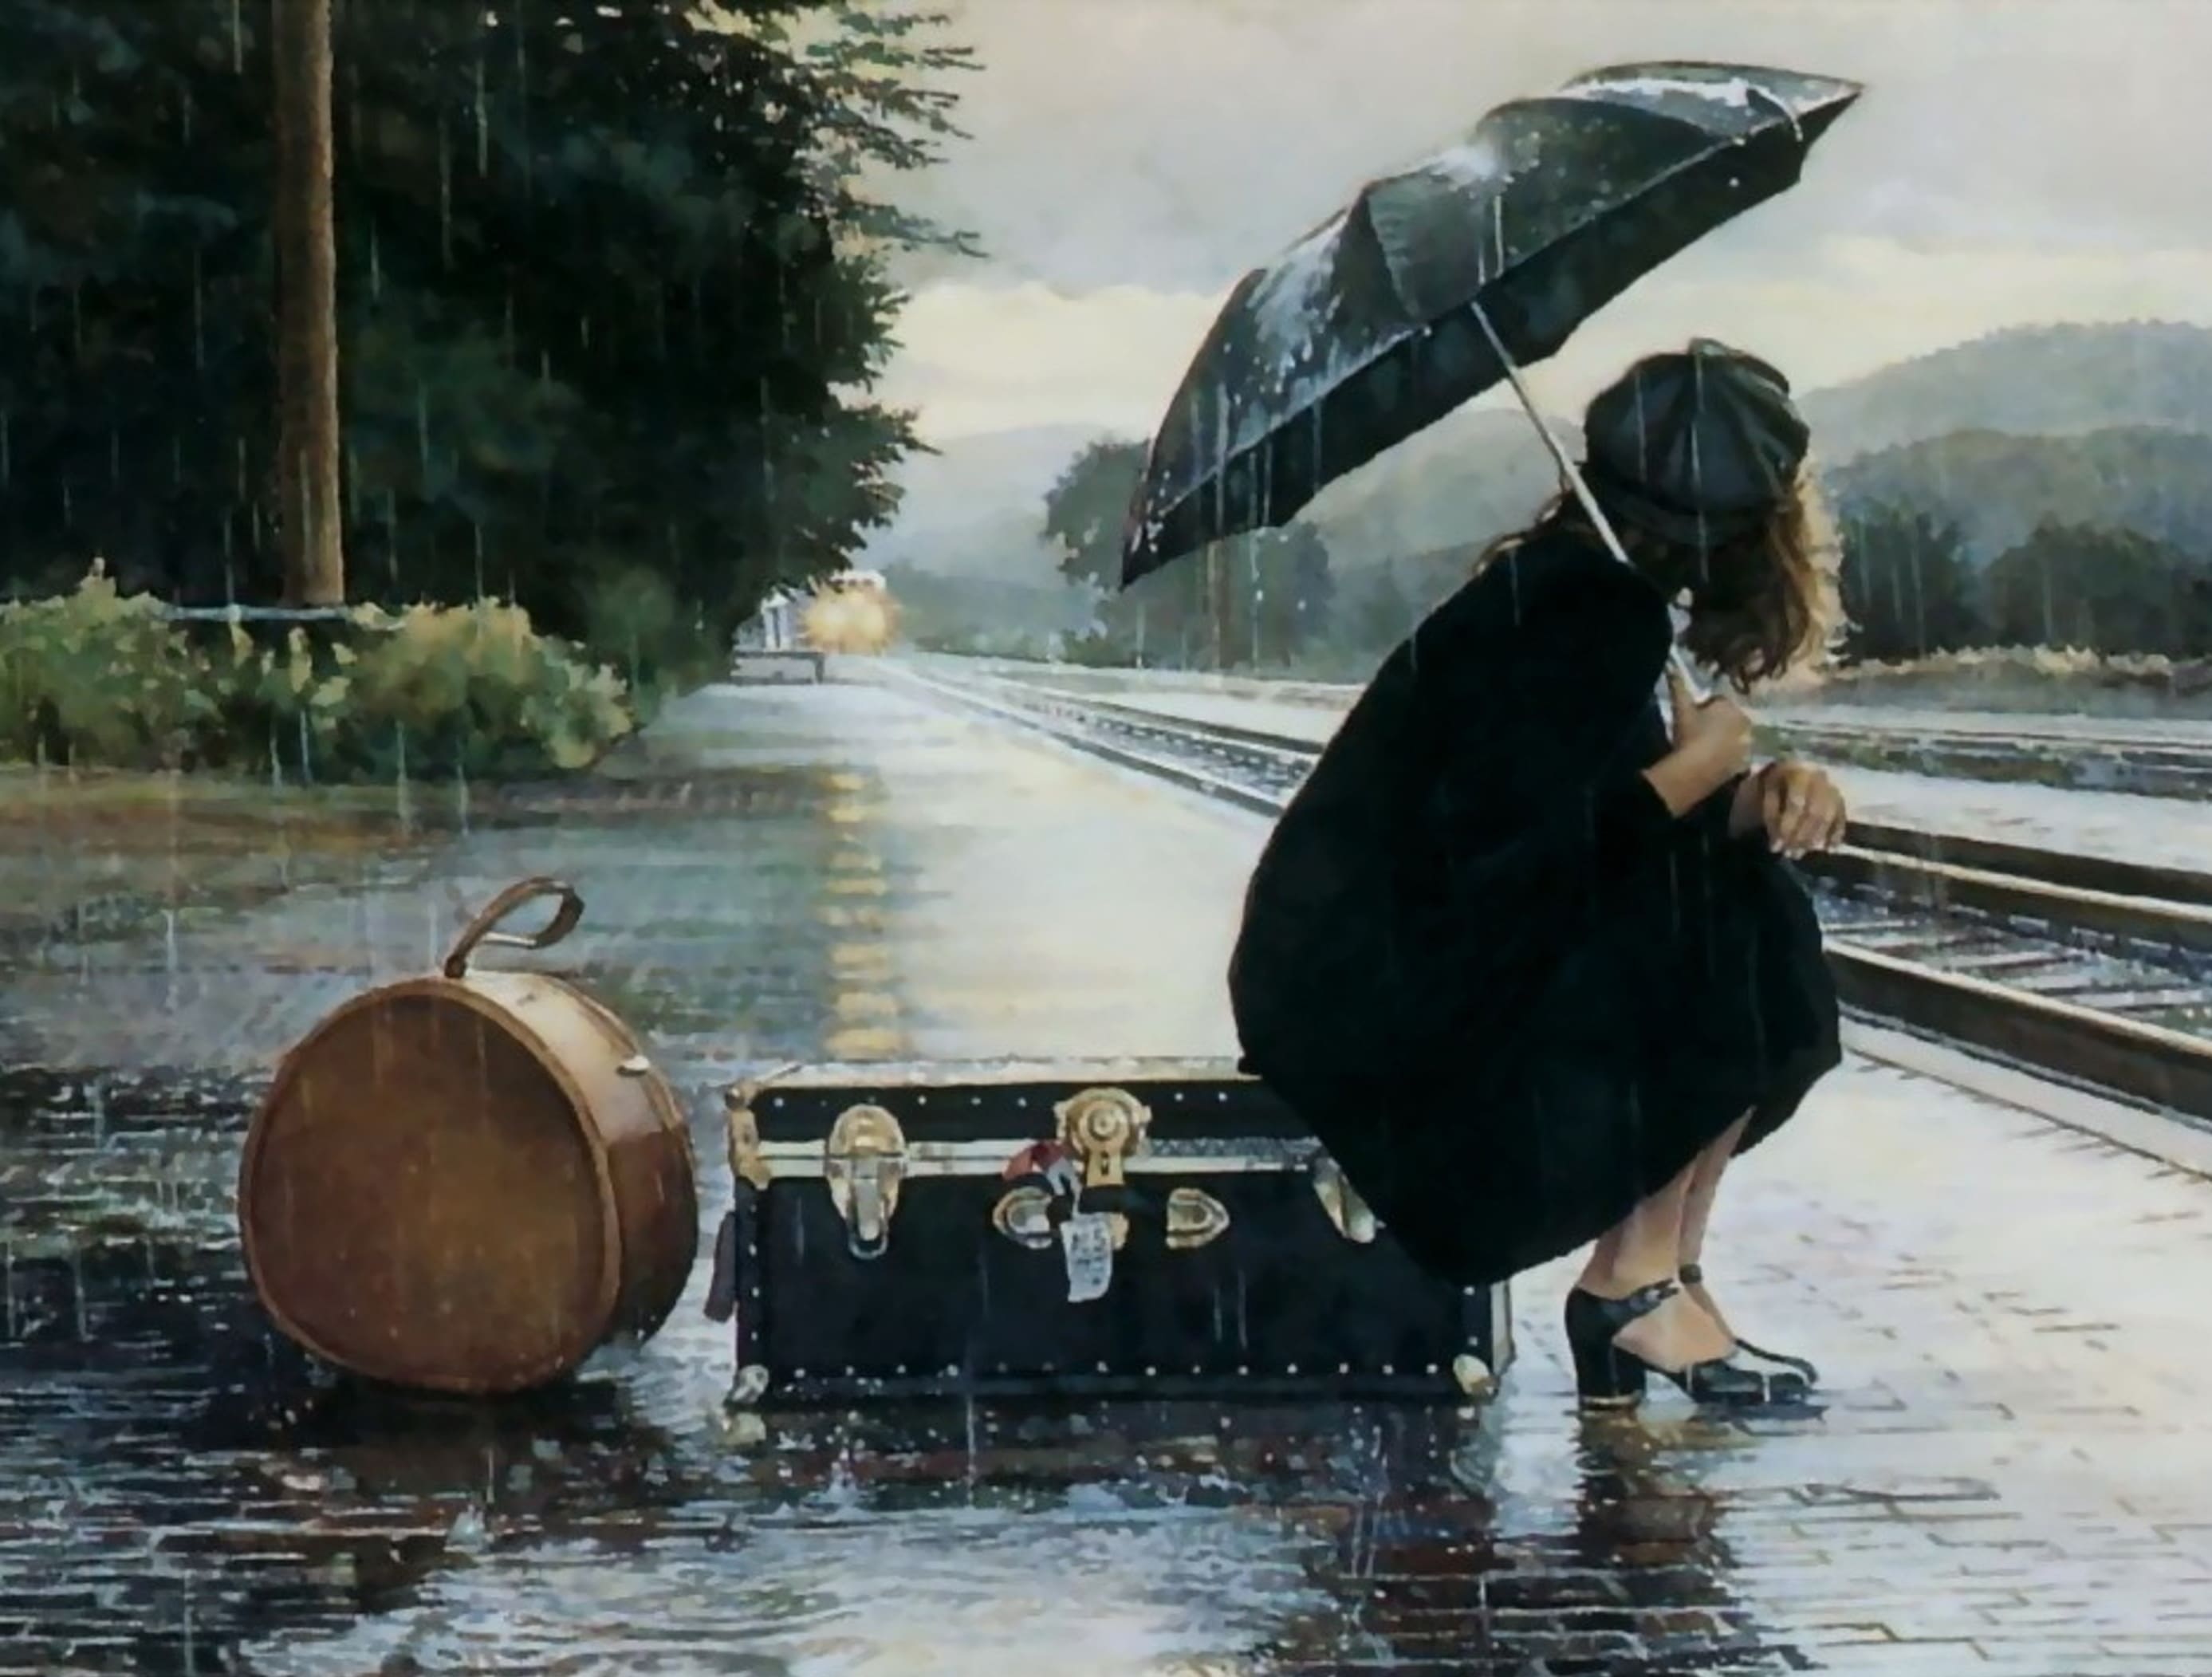 Песня уезжаю покидаю эту страну. Художник Стив Хэнкс картины. Стив Хэнкс акварель. Живопись Стив Хэнкс девушка на вокзале дождь. Steve Hanks картины дождя.